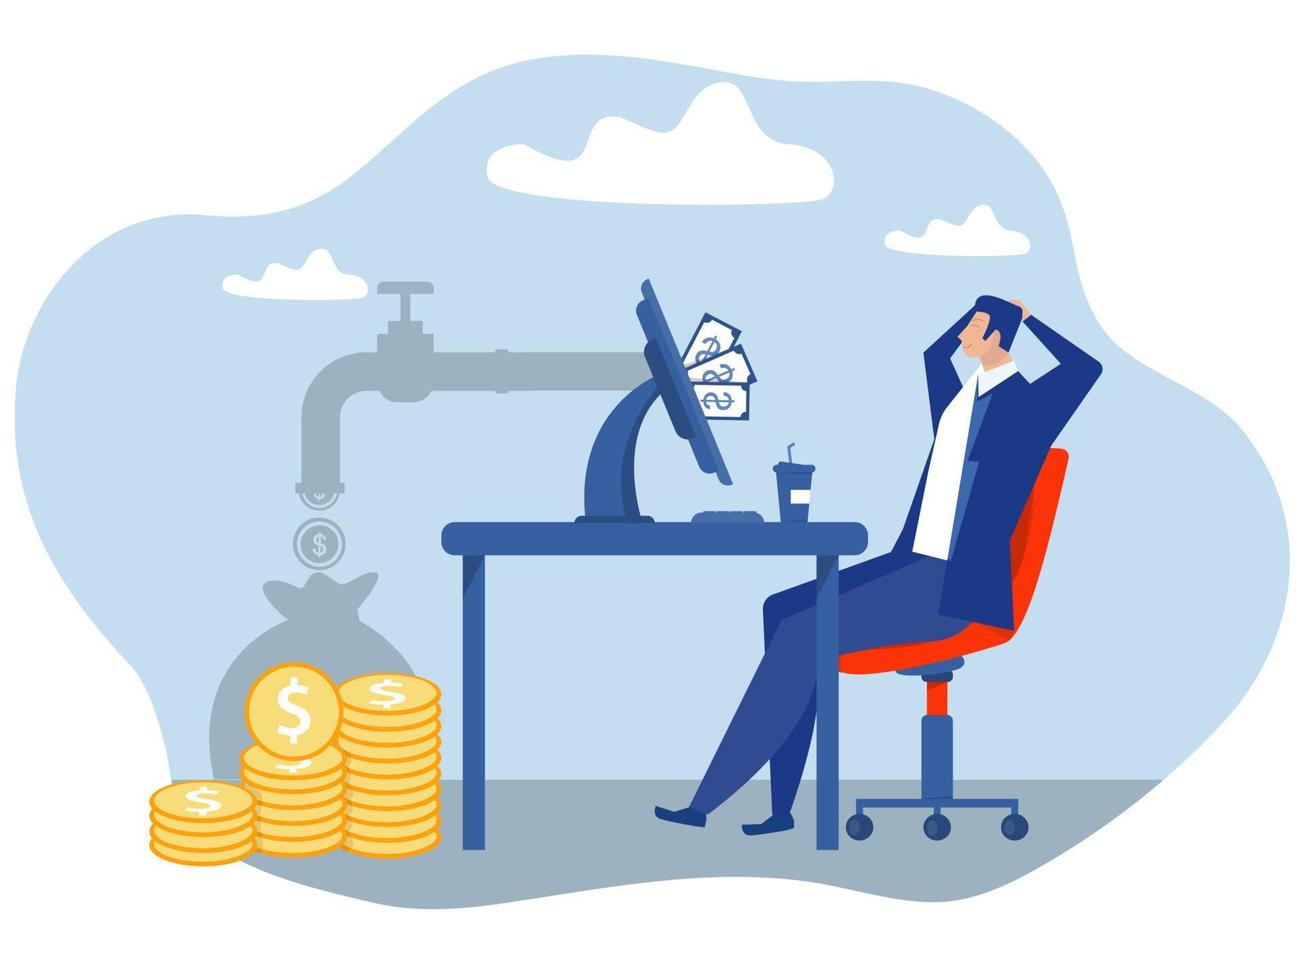 online bedrijf maken geld online gelukkig zakenman verdienen geld online via laptop bedrijf concept vector illustratie